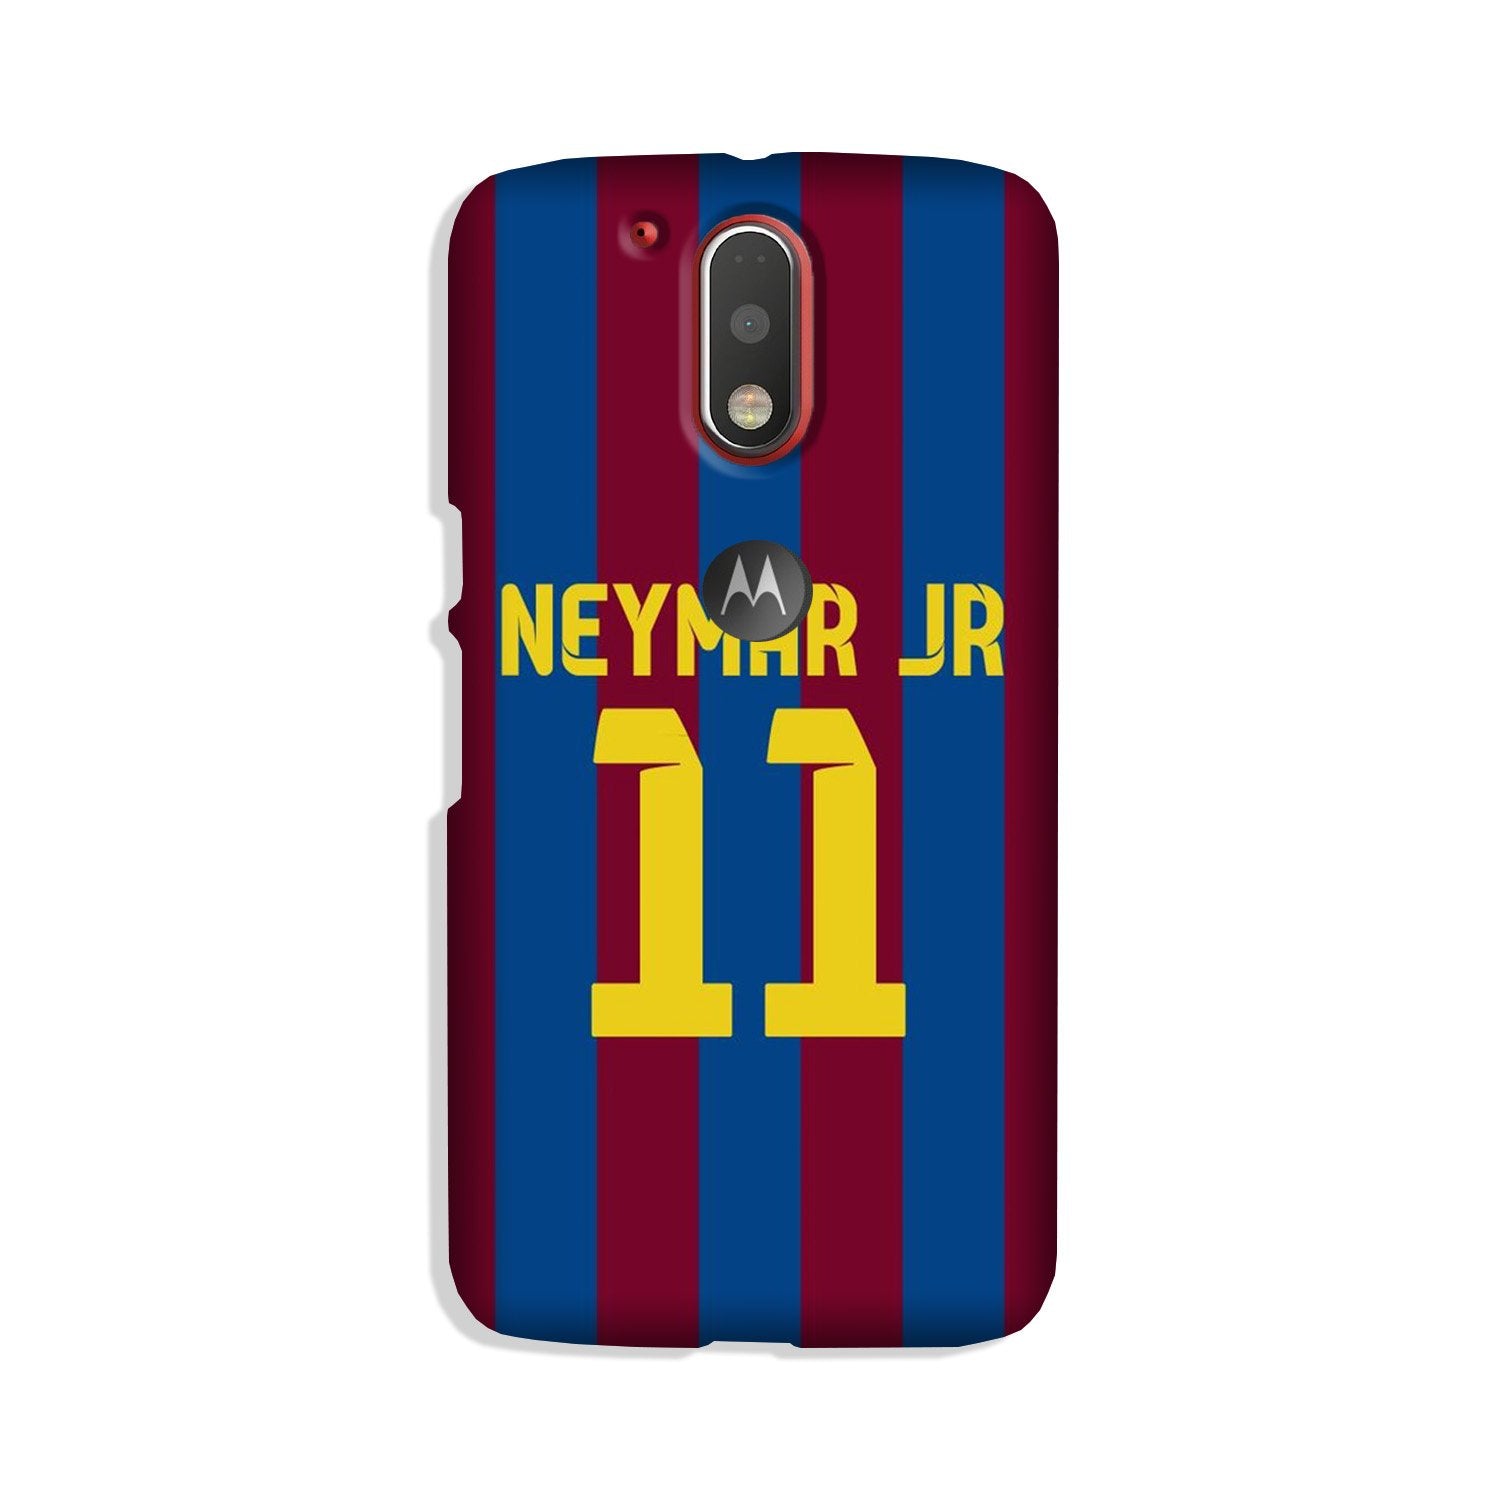 Neymar Jr Case for Moto G4 Plus(Design - 162)